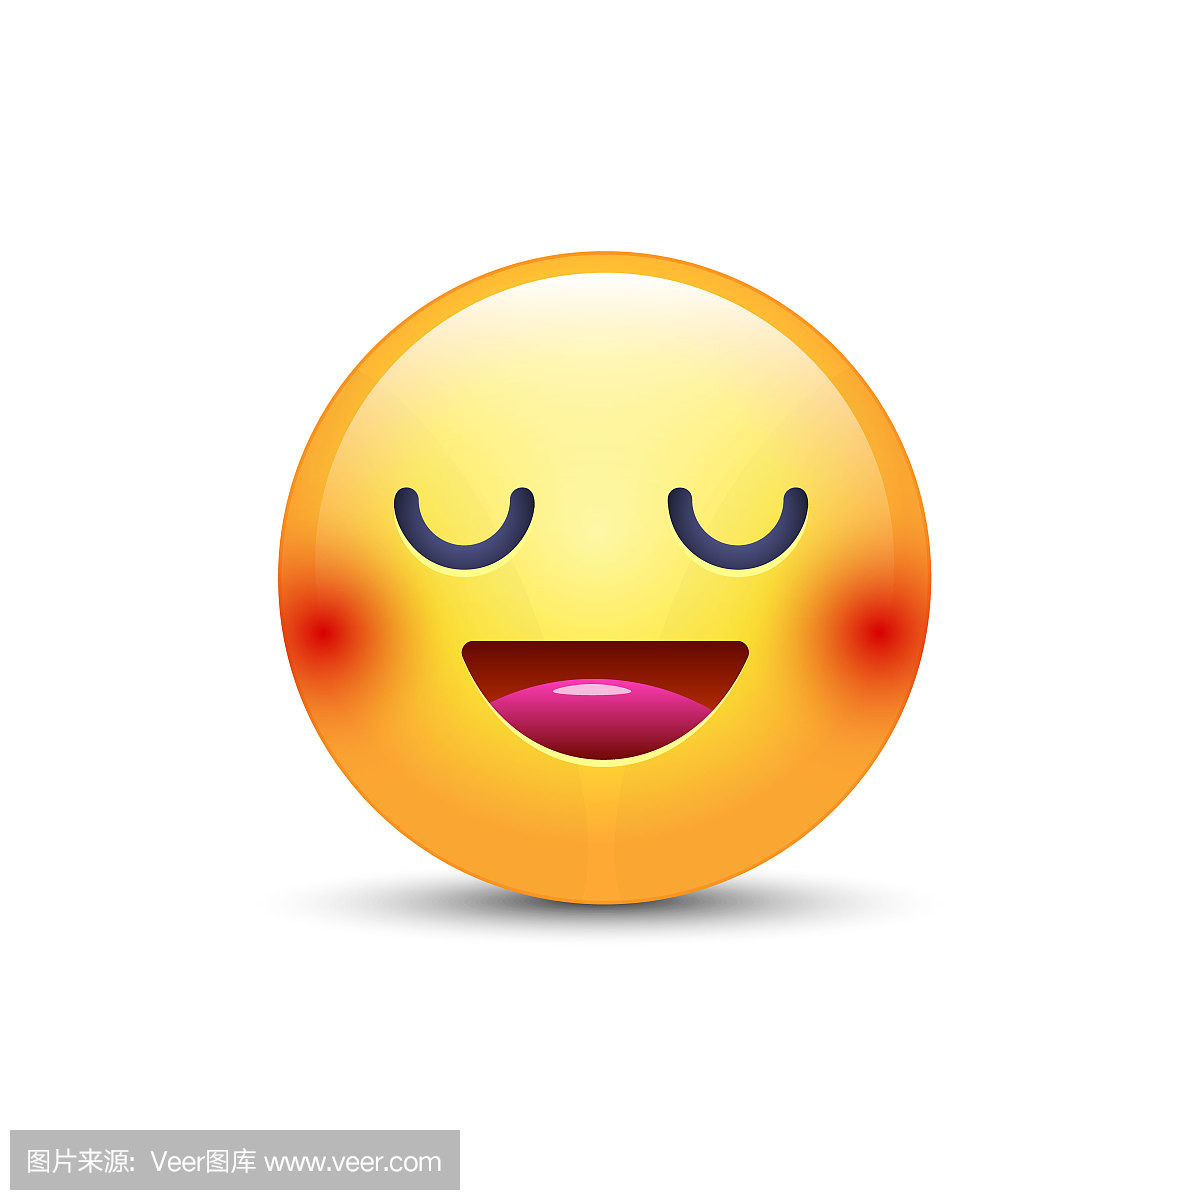 Fun cartoon emoji smiley icon face. Happy smi